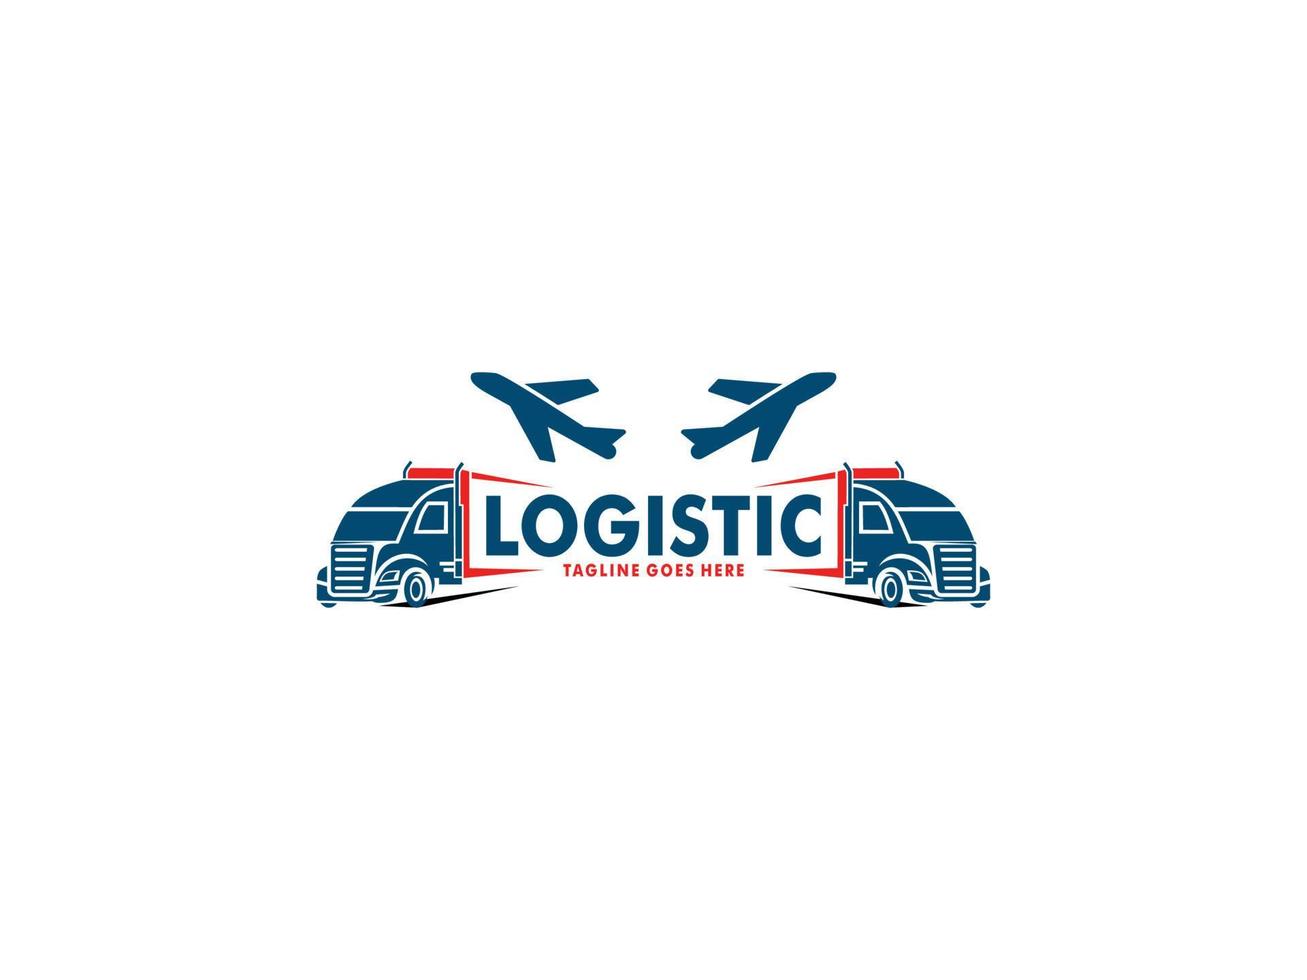 uitdrukken logistiek vervoer concept logo ontwerp sjabloon vector